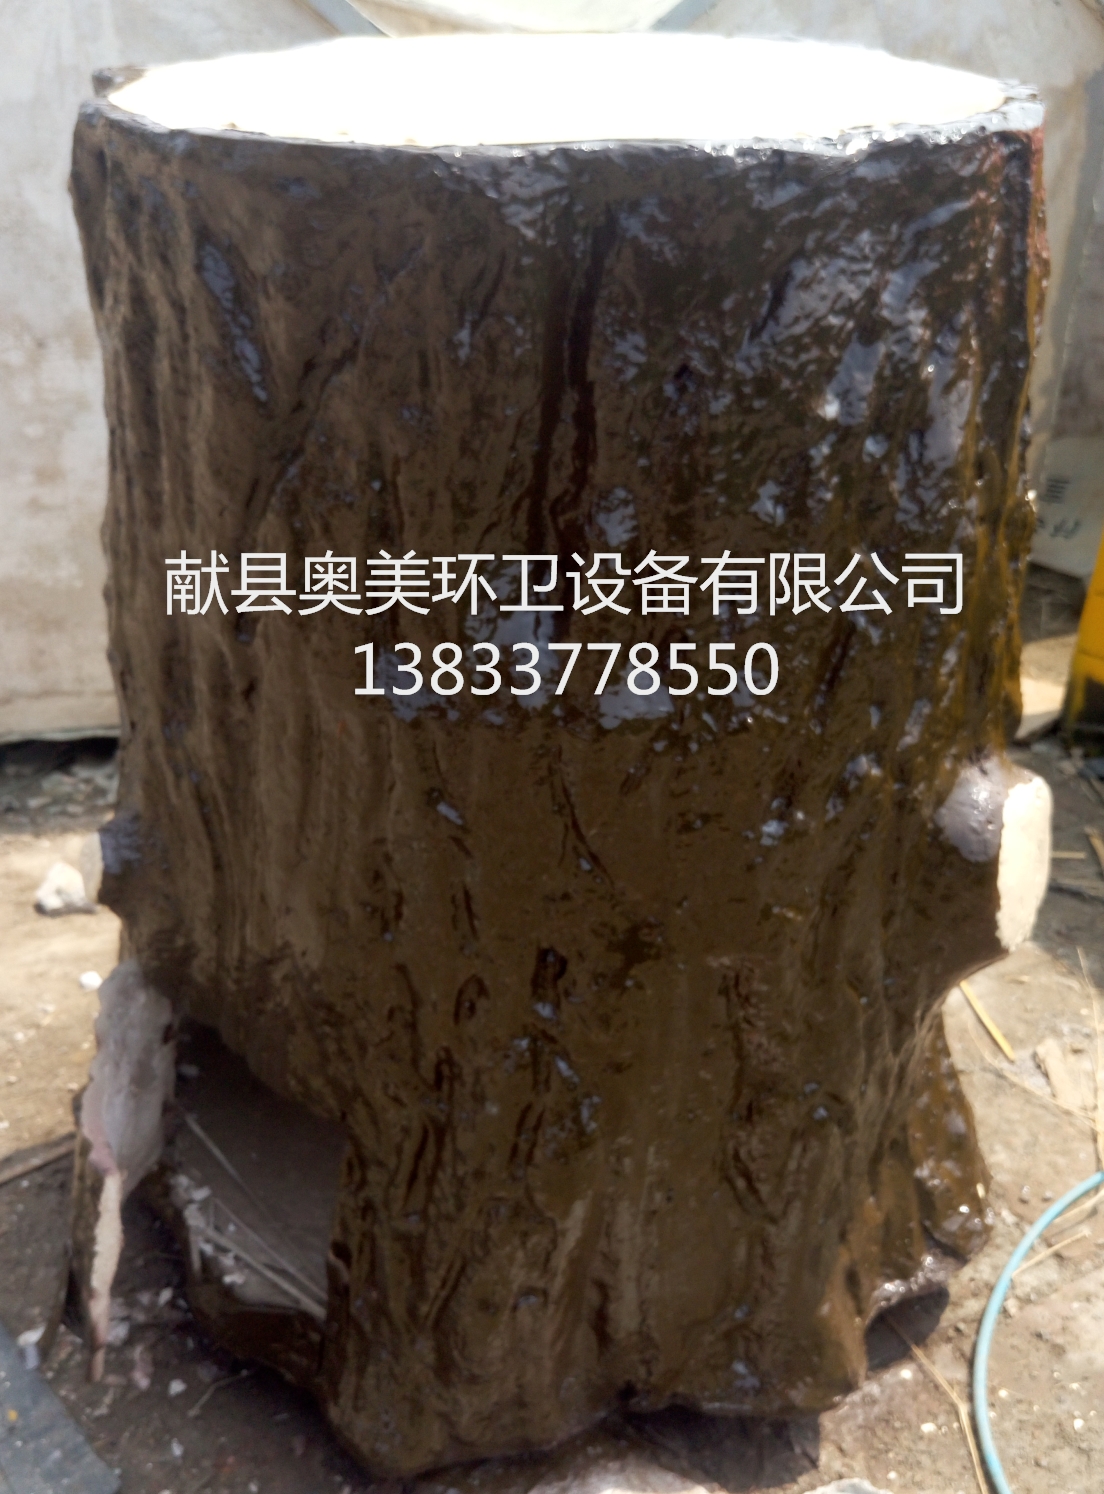 沧州市厂家直销 户外耐腐蚀玻璃钢垃圾桶厂家